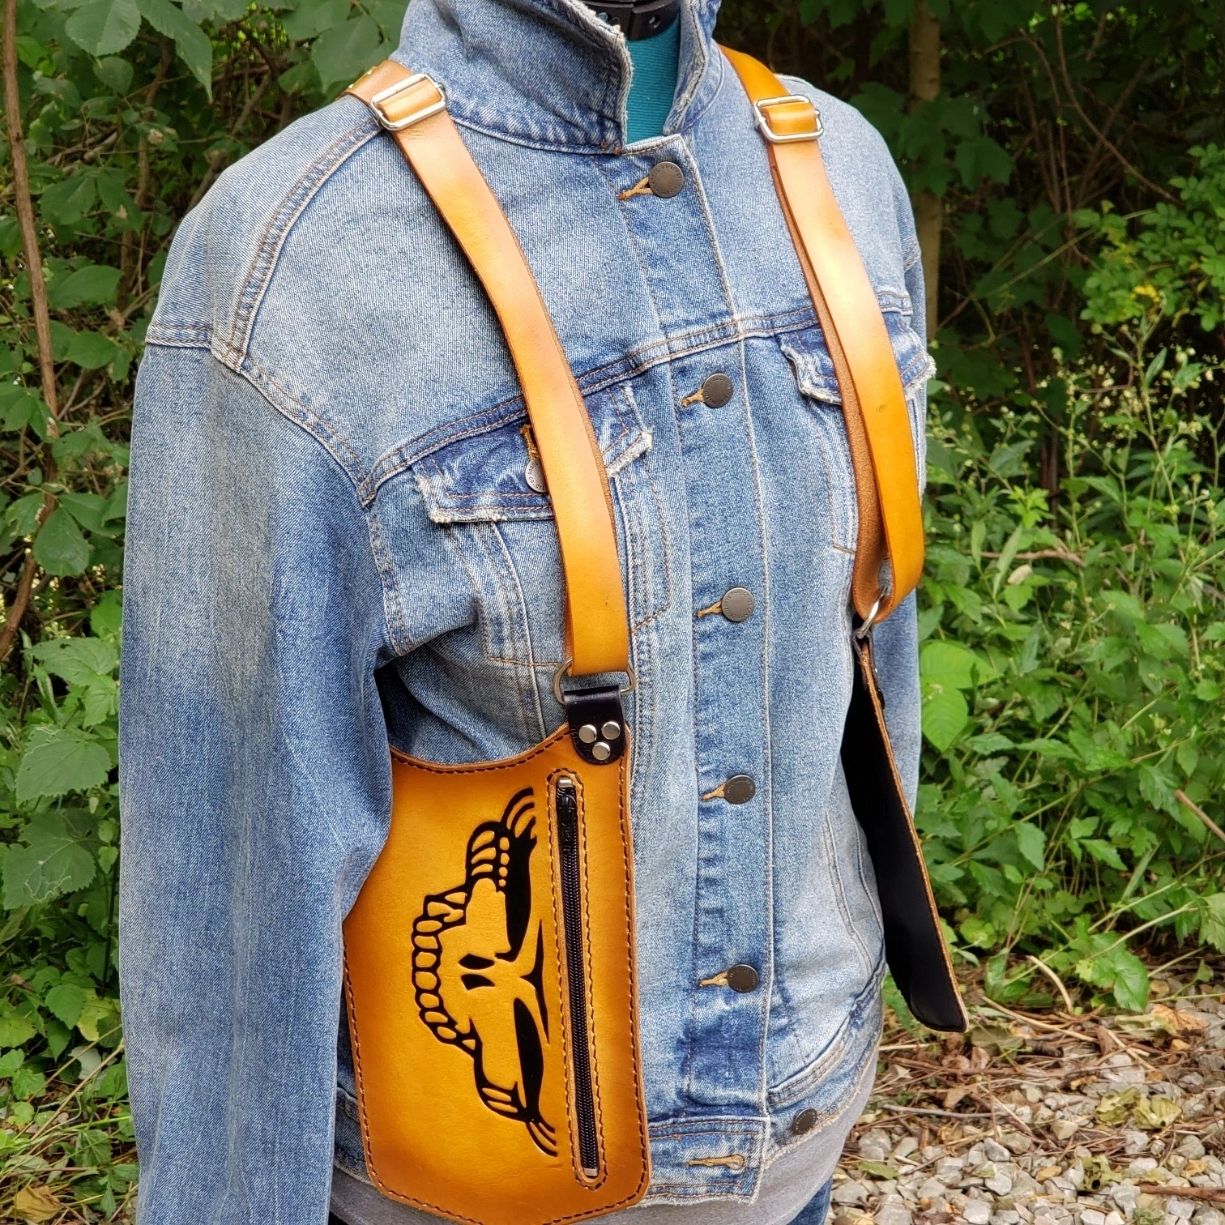 Festival Pocket Utility Holster Vest Shoulder Holster Bag 